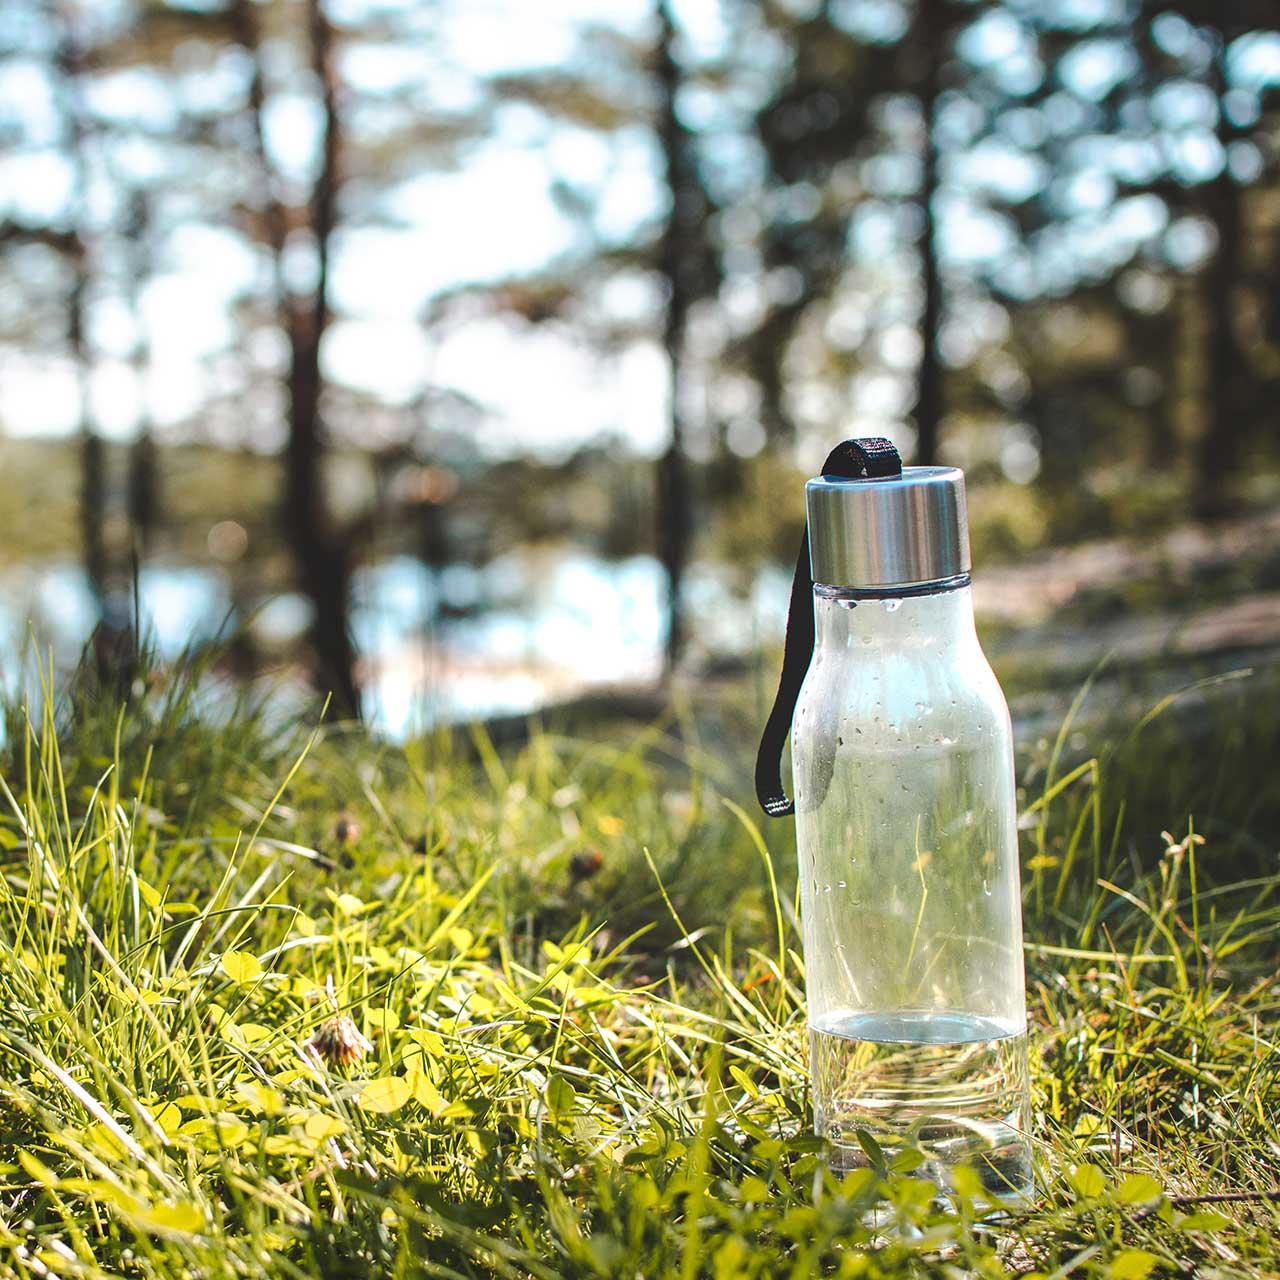 Vandflaske står i naturen